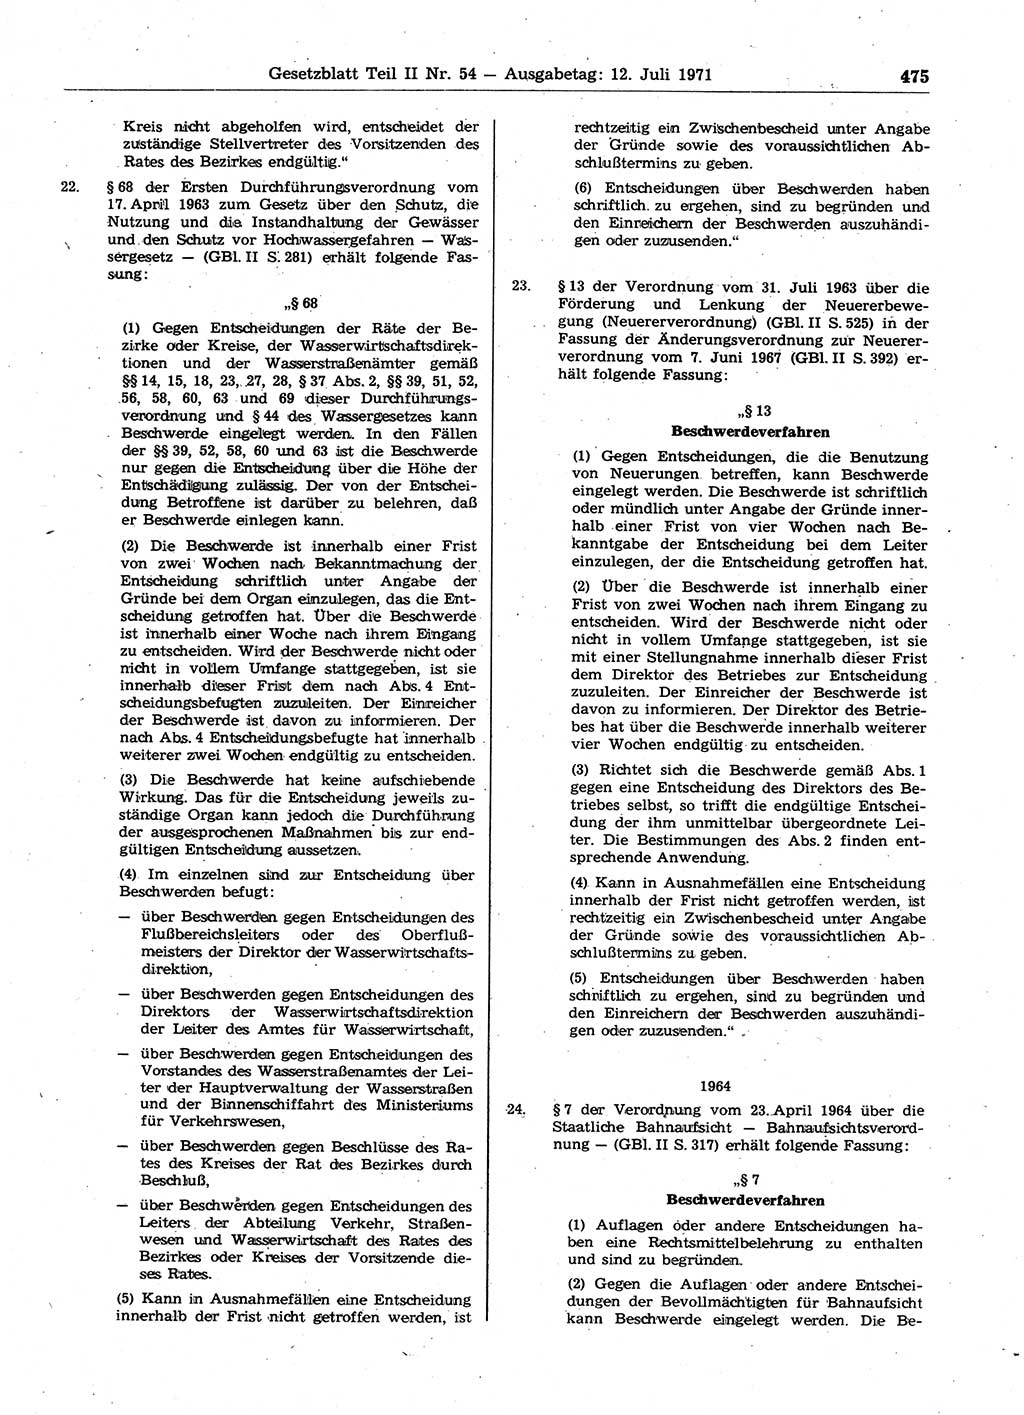 Gesetzblatt (GBl.) der Deutschen Demokratischen Republik (DDR) Teil ⅠⅠ 1971, Seite 475 (GBl. DDR ⅠⅠ 1971, S. 475)